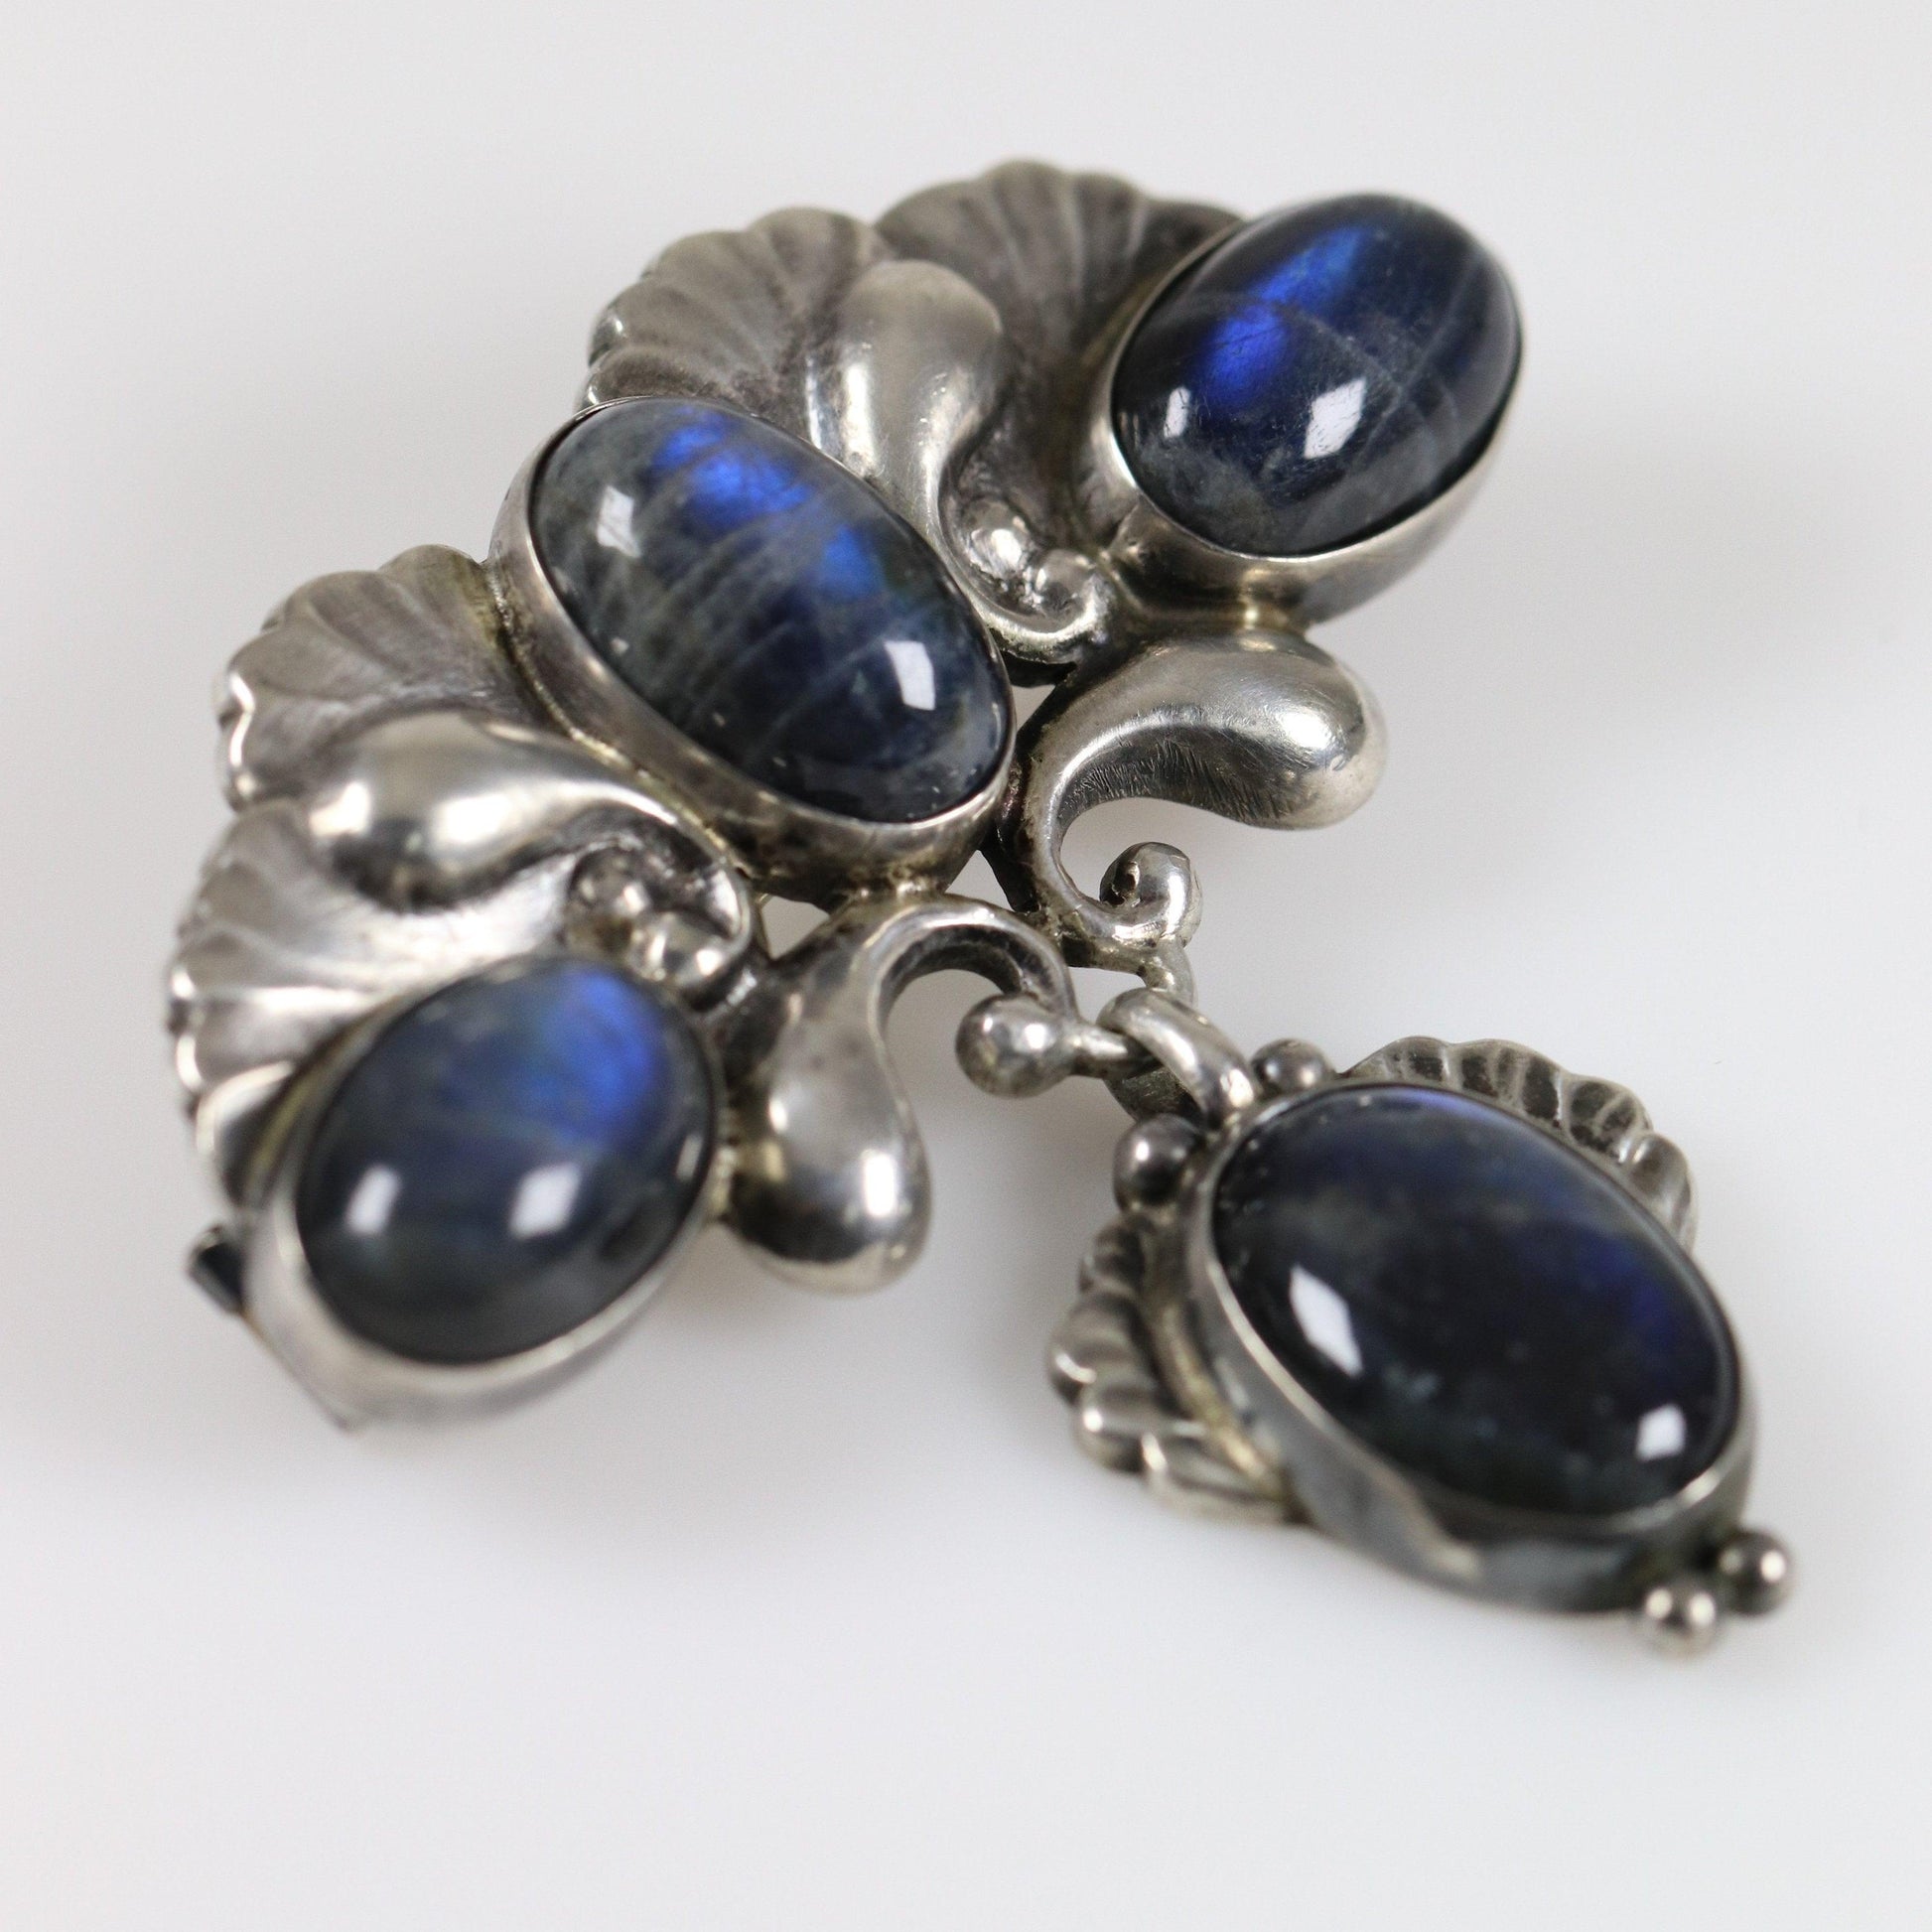 Georg Jensen Jewelry | Labradorite Art Nouveau Silver Vintage Brooch 152 - Carmel Fine Silver Jewelry